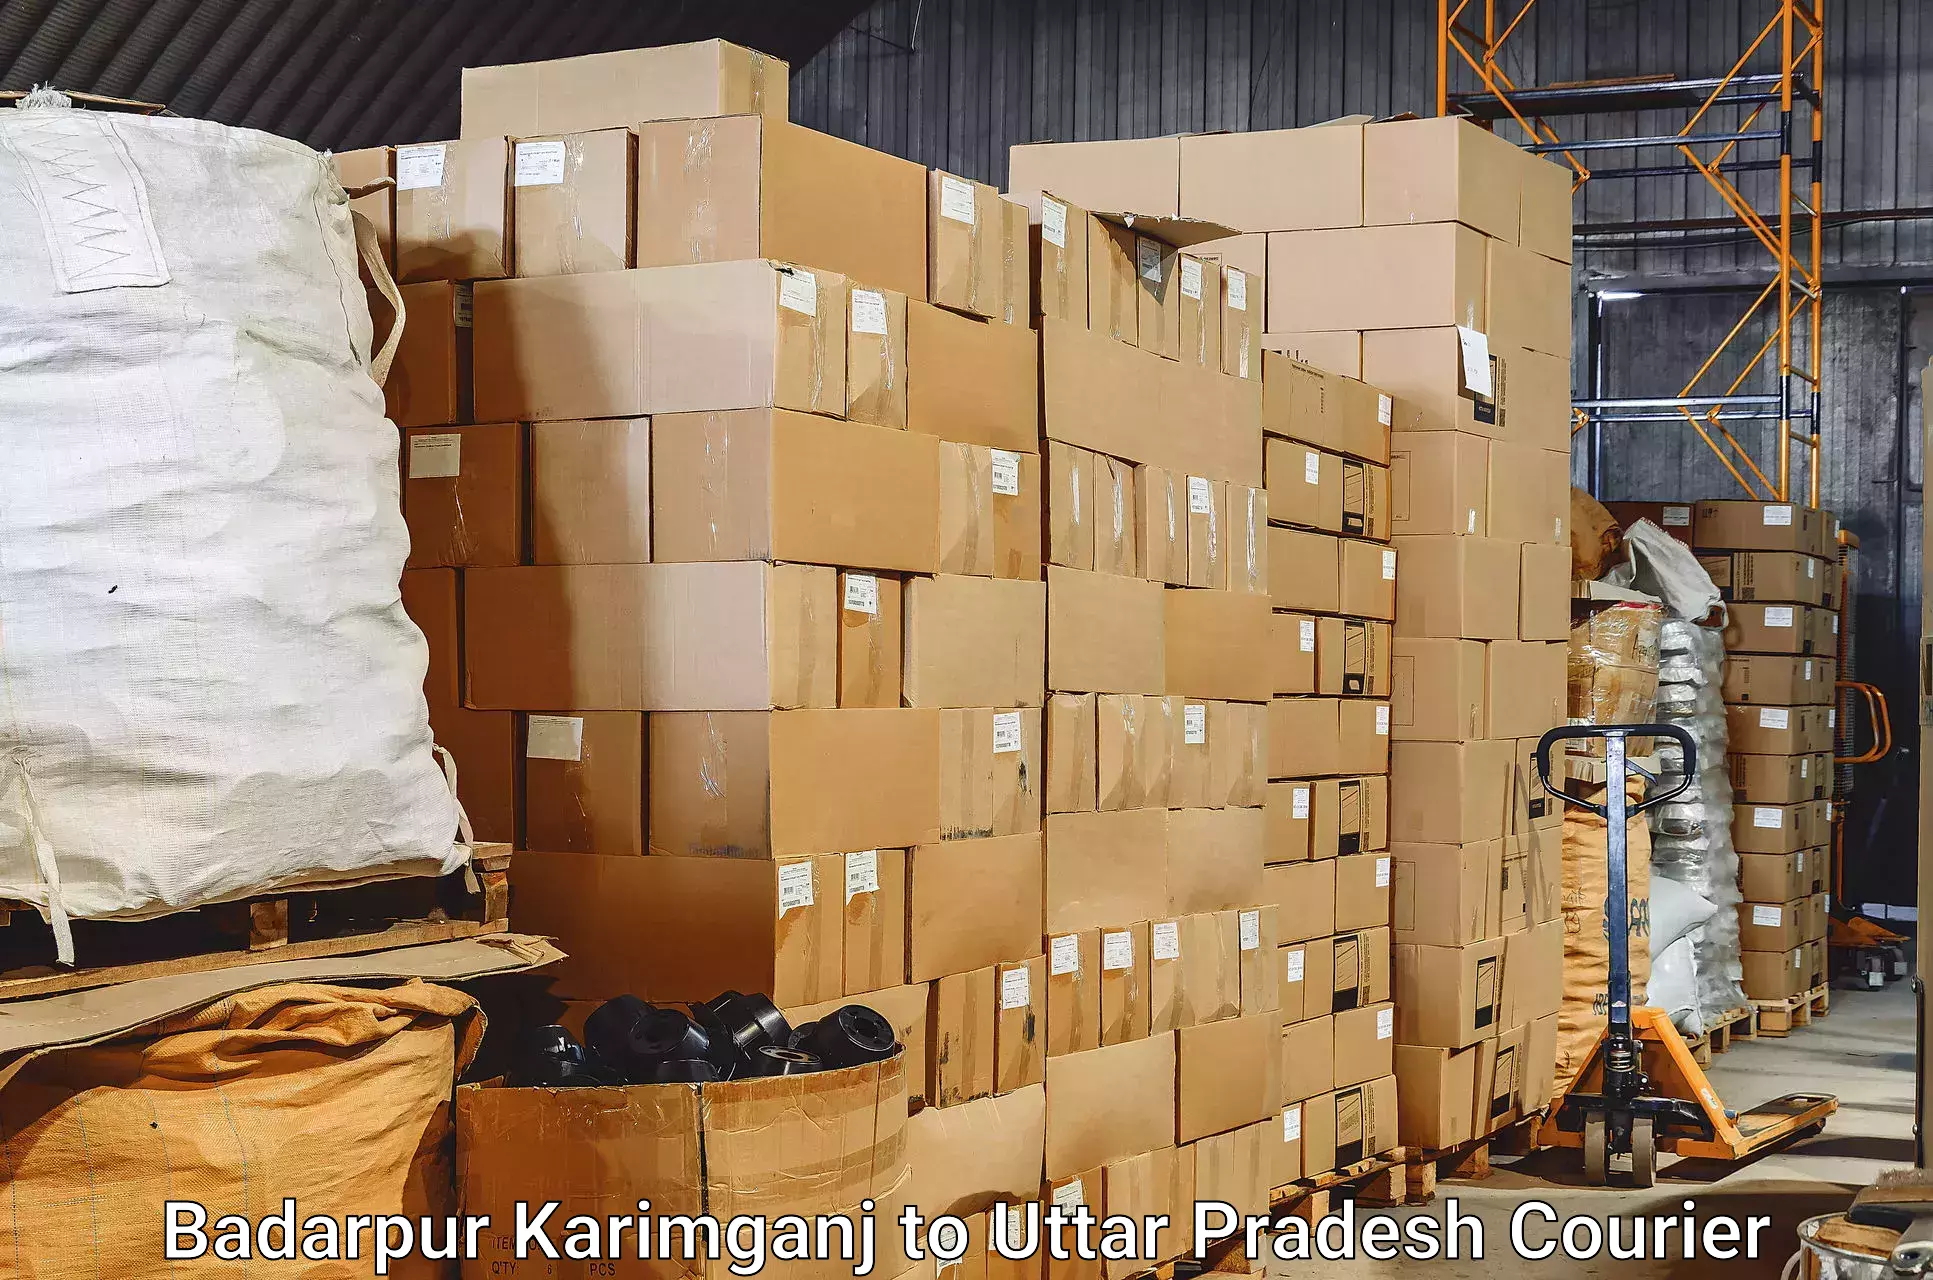 Baggage shipping service Badarpur Karimganj to Sahatwar